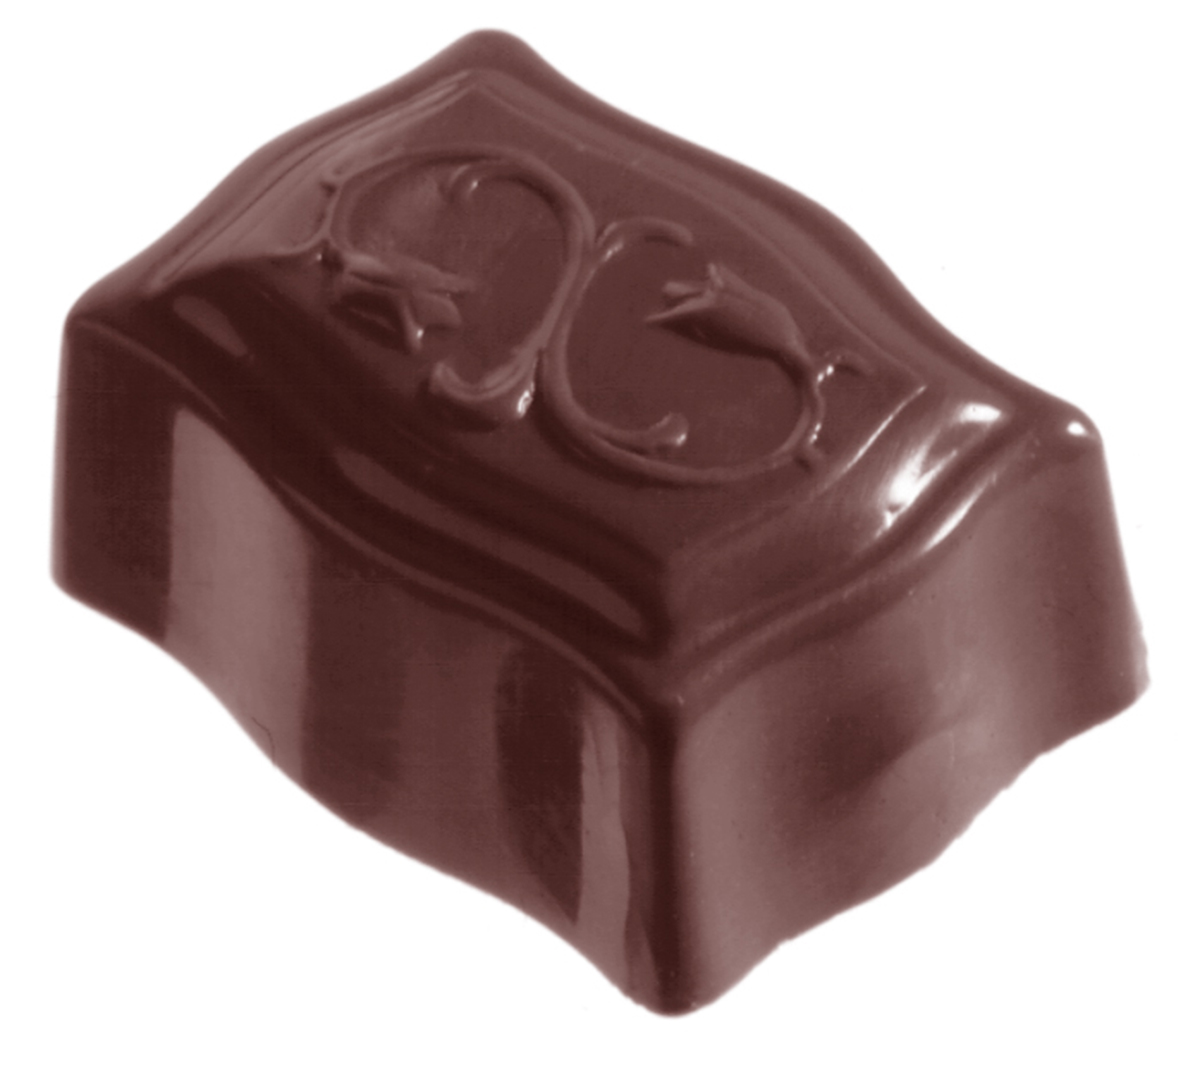 Professionel chokoladeform i polycarbonat - Guirlande CW1263